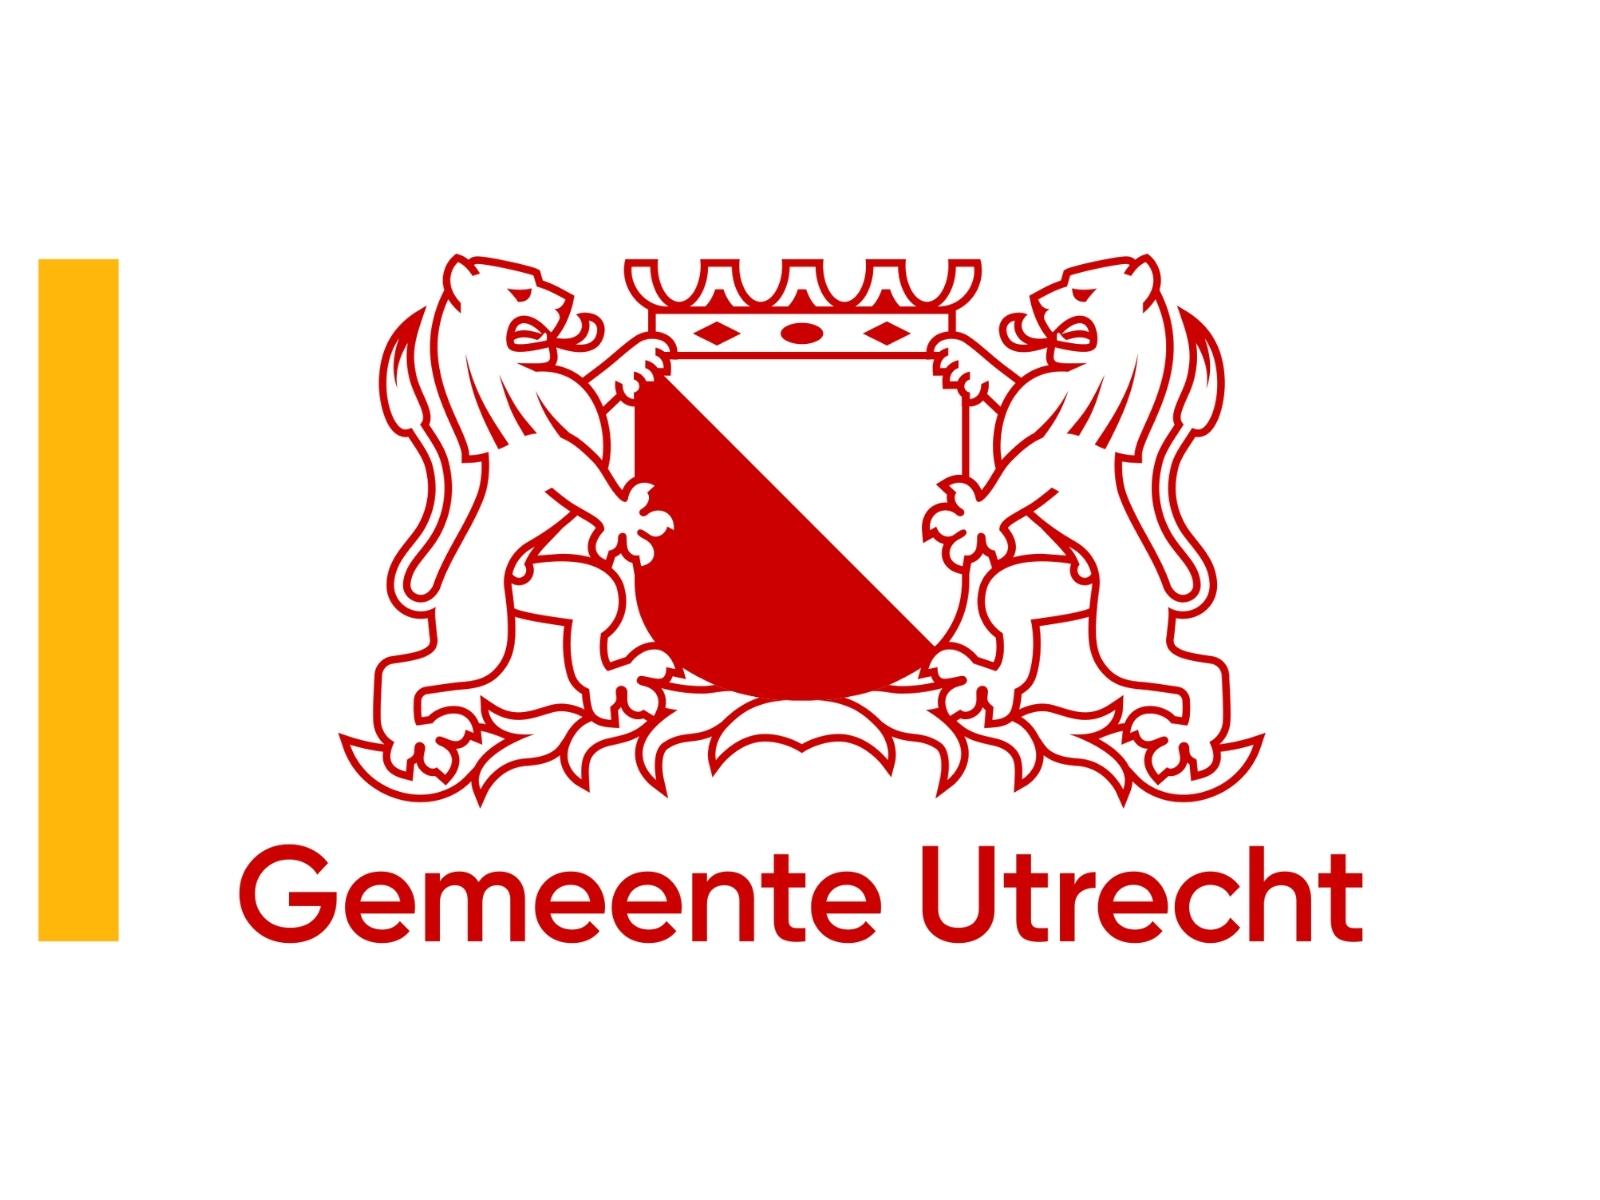 Municipality of Utrecht